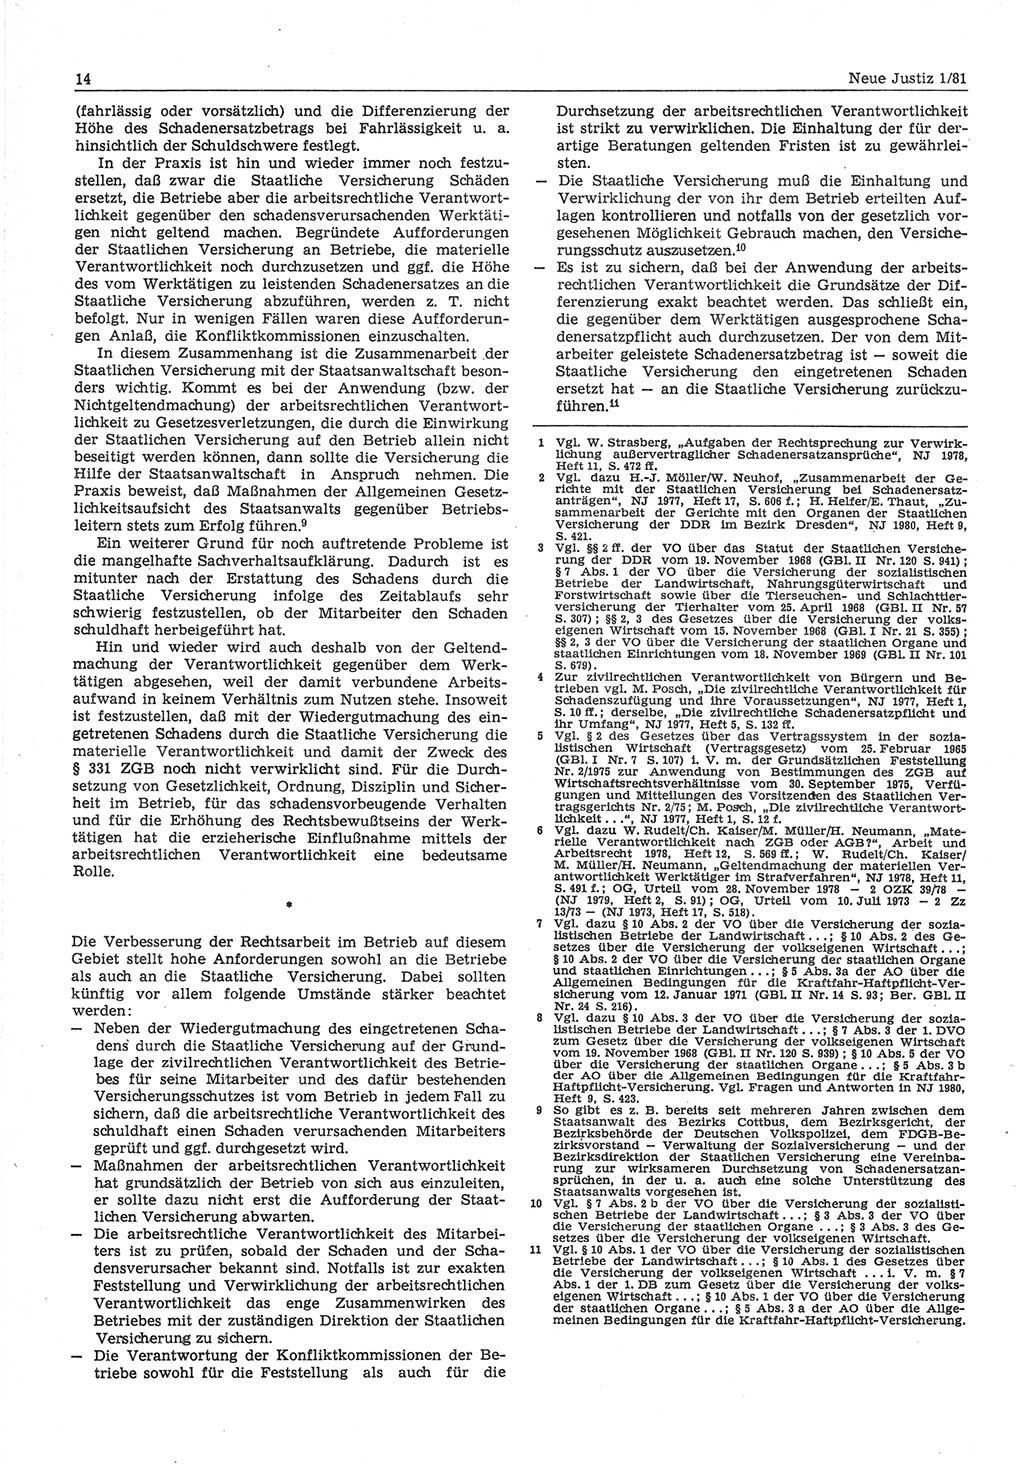 Neue Justiz (NJ), Zeitschrift für sozialistisches Recht und Gesetzlichkeit [Deutsche Demokratische Republik (DDR)], 35. Jahrgang 1981, Seite 14 (NJ DDR 1981, S. 14)